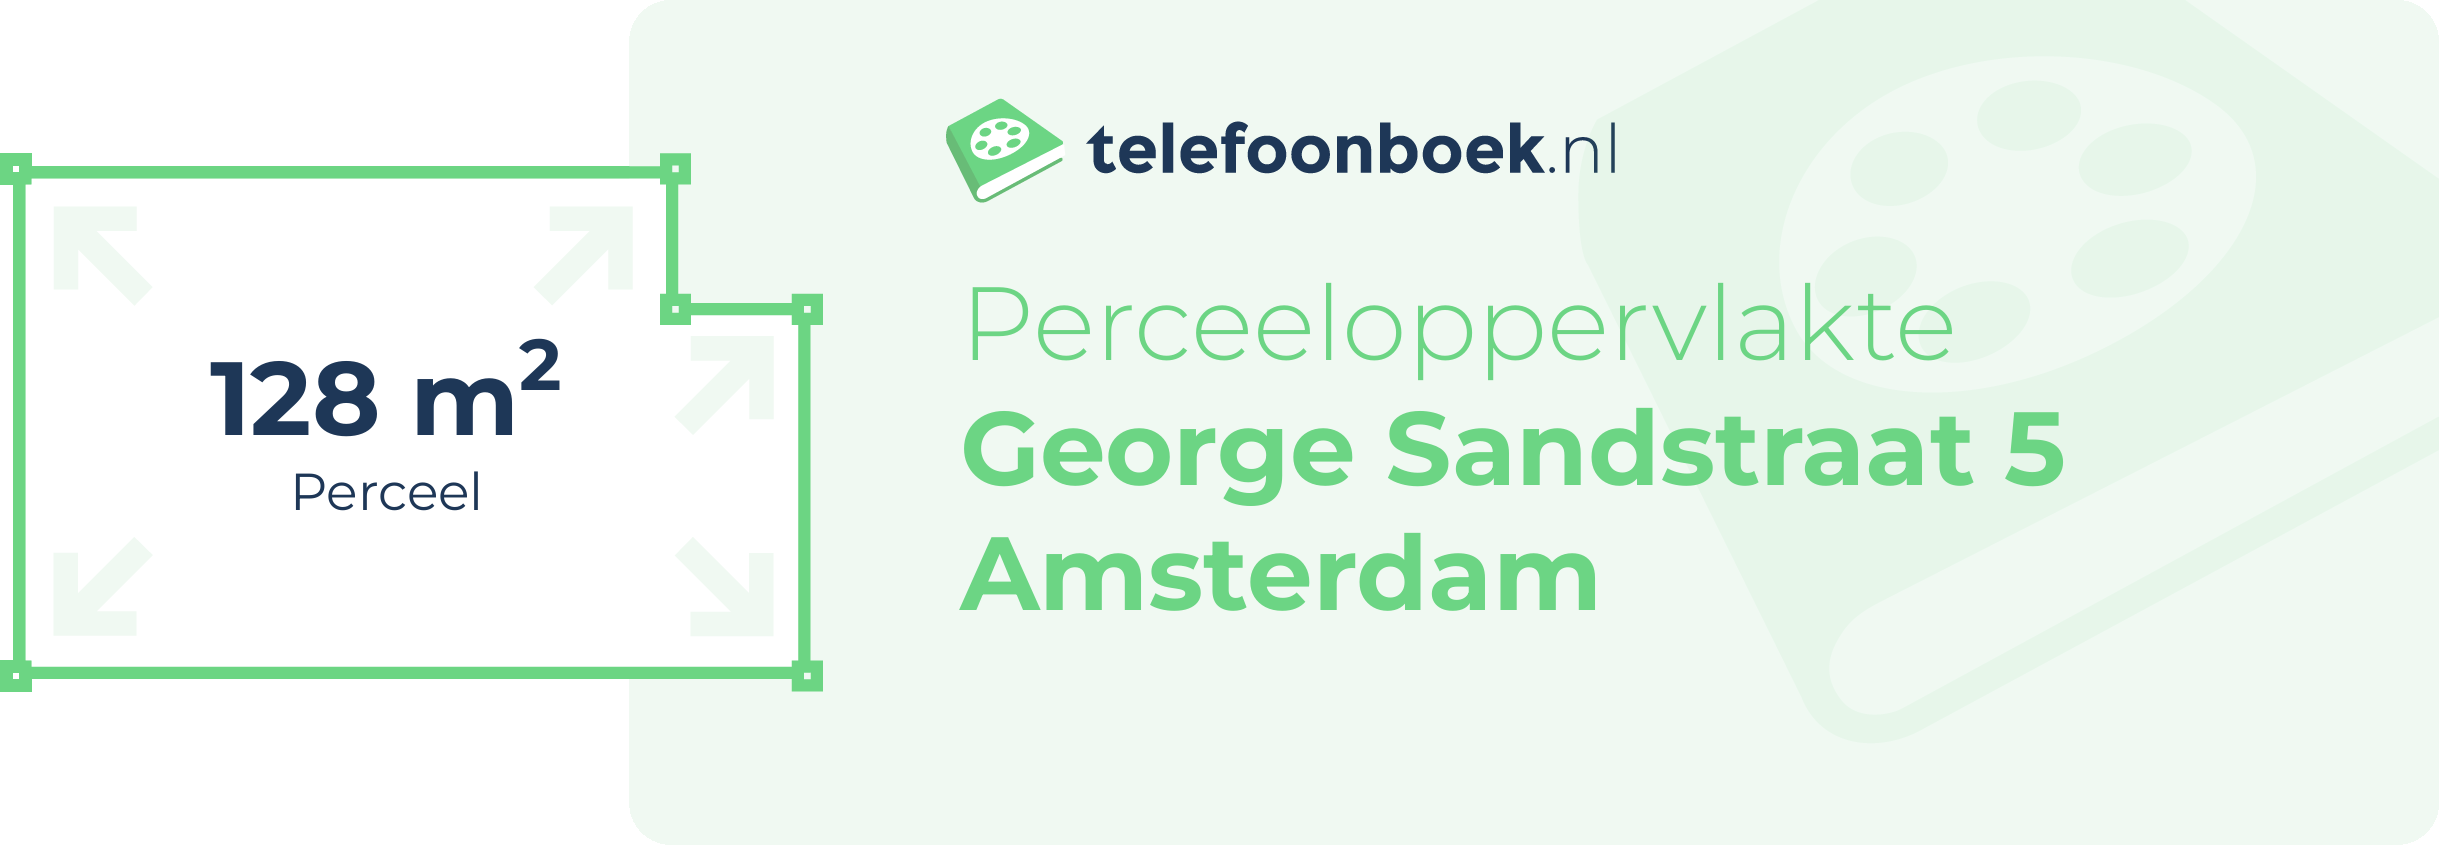 Perceeloppervlakte George Sandstraat 5 Amsterdam